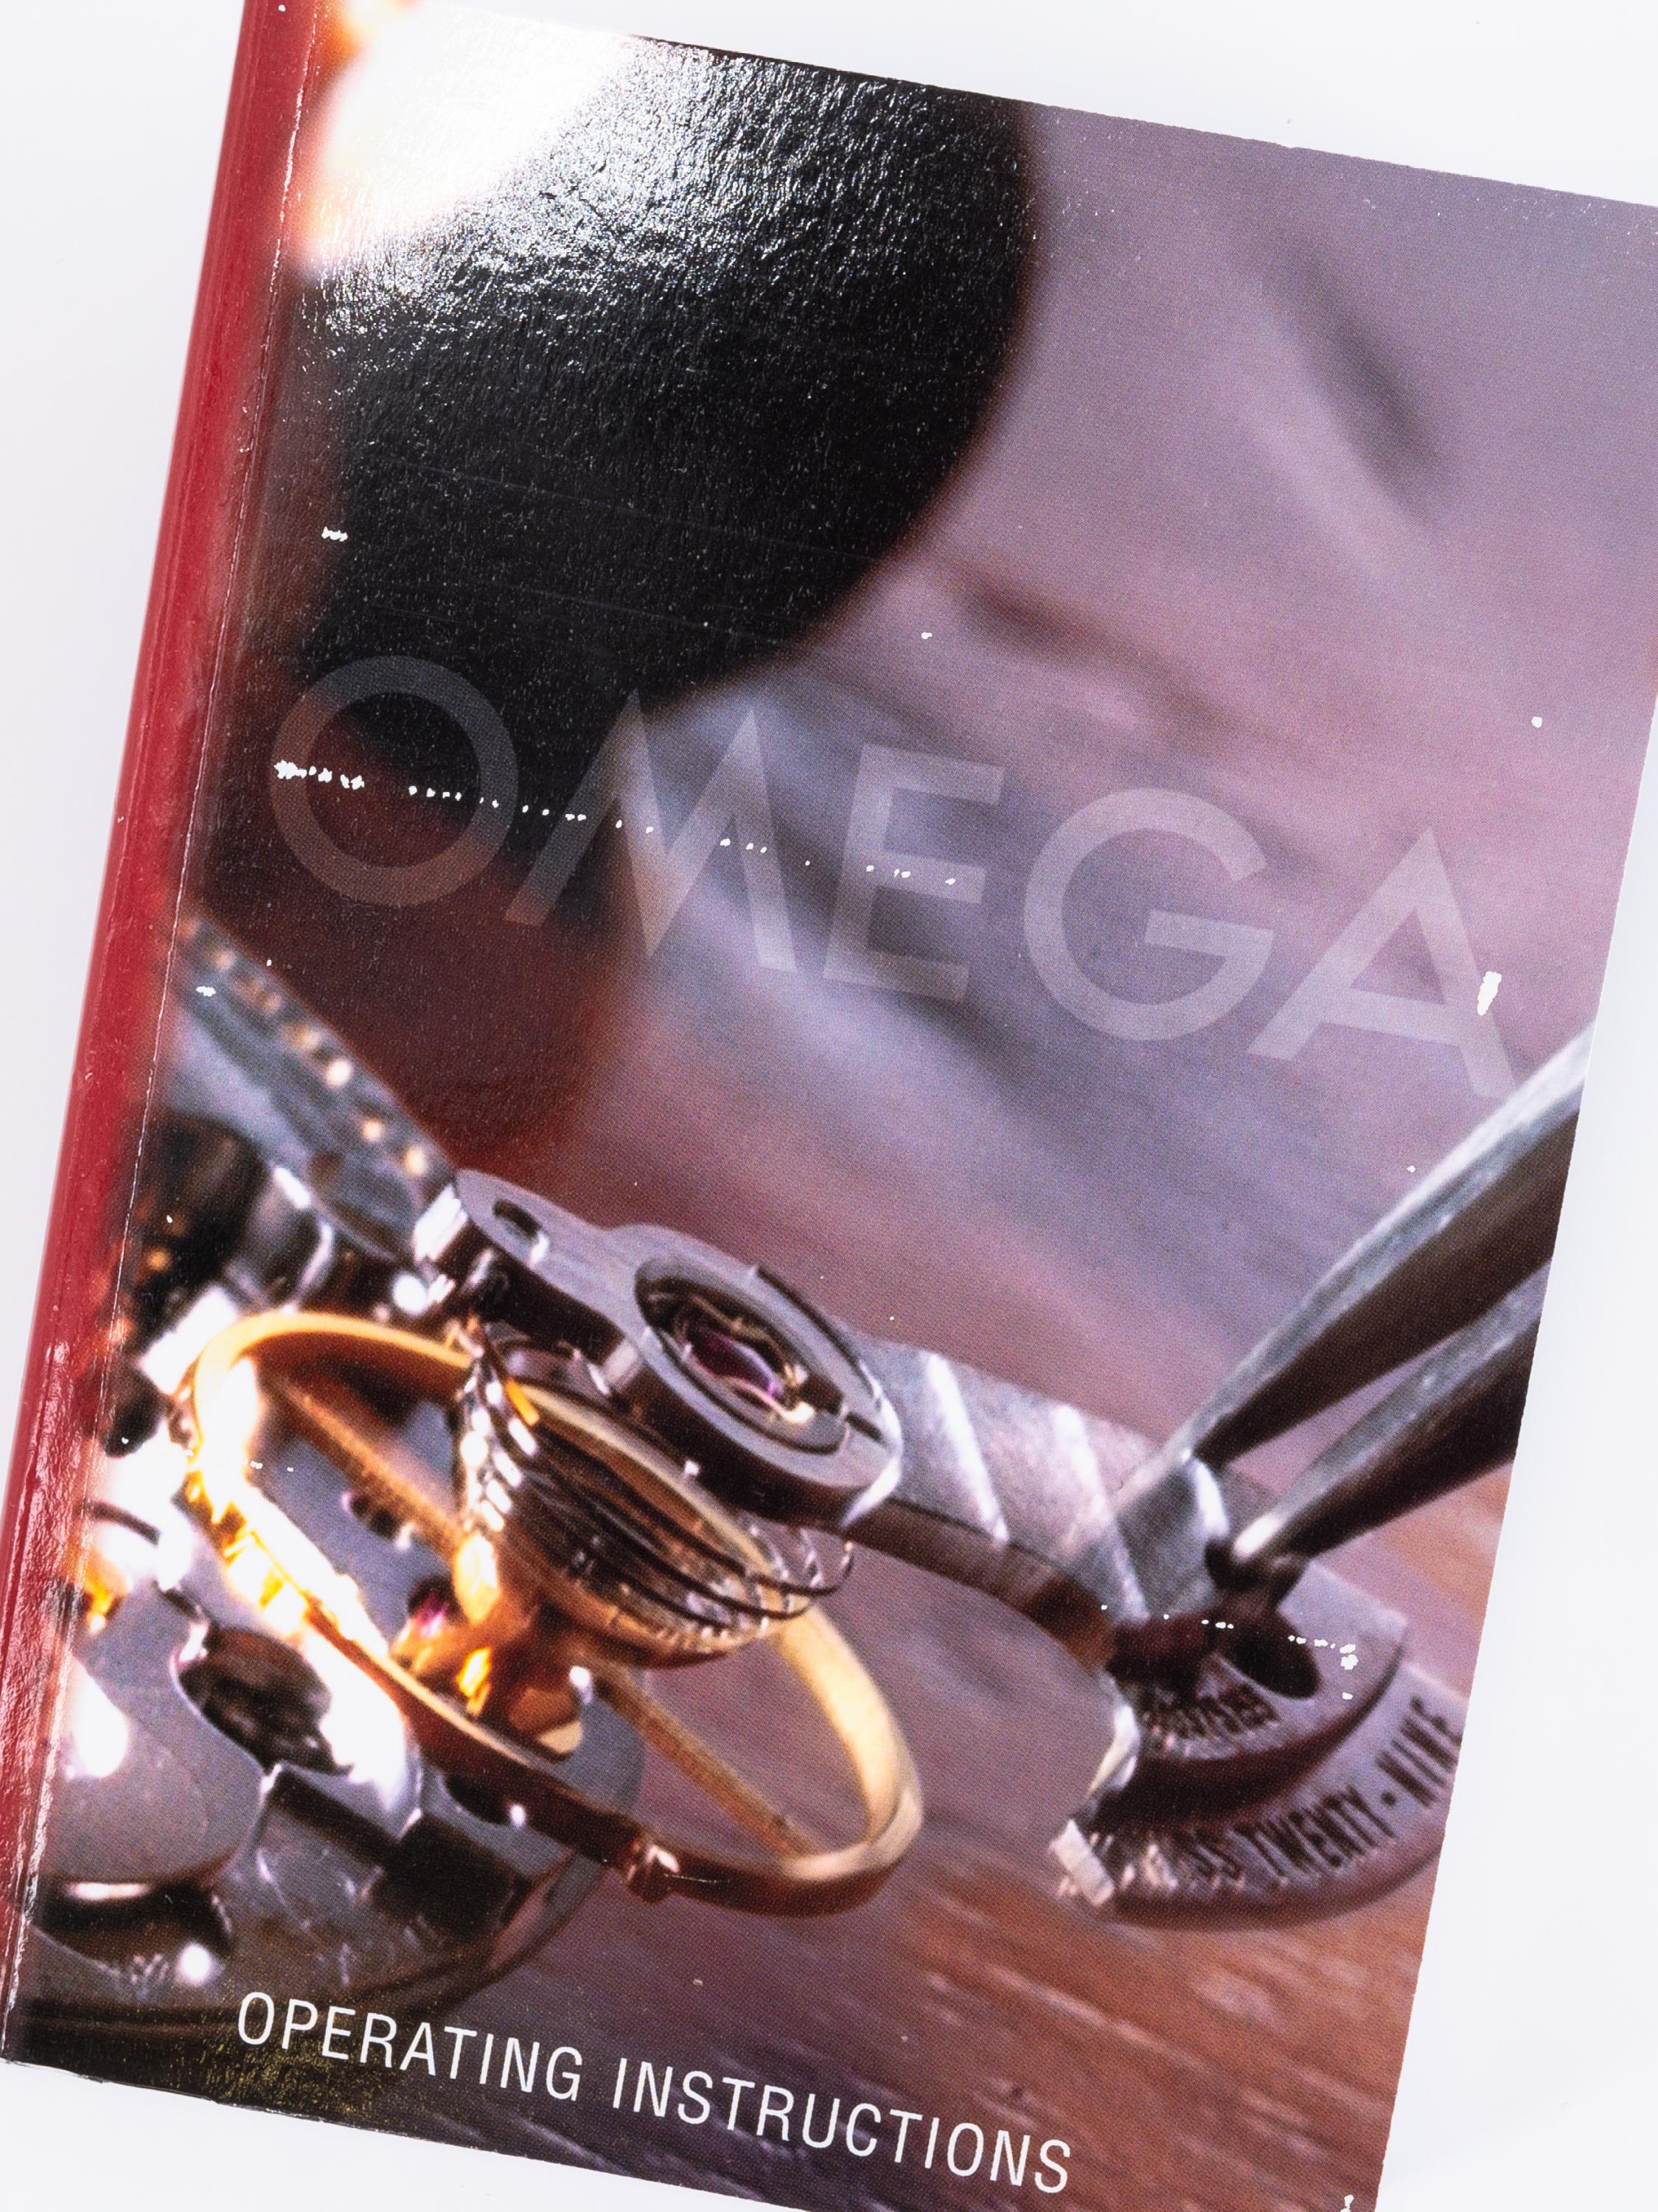 Omega: Speedmaster - Image 7 of 8